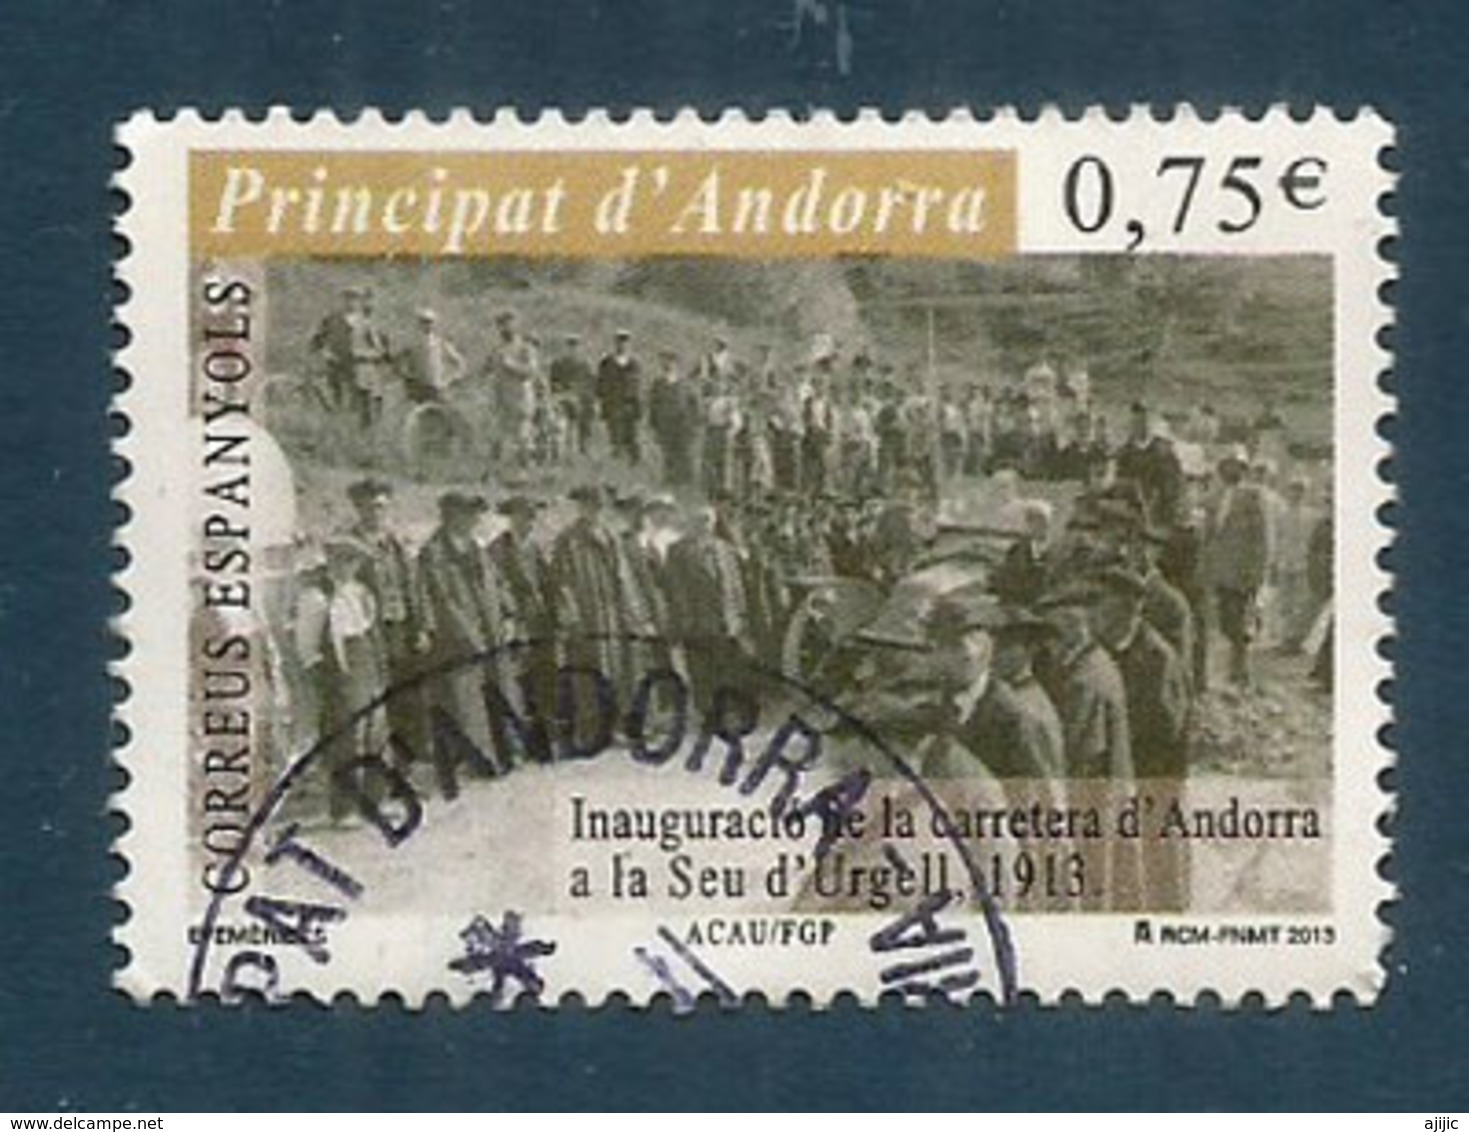 Première Route D'accès D'Andorre En 1913, Vers L'Espagne, Un Timbre Oblitéré, 1 ère Qualité, Année 2013.AND.ESP - Gebraucht